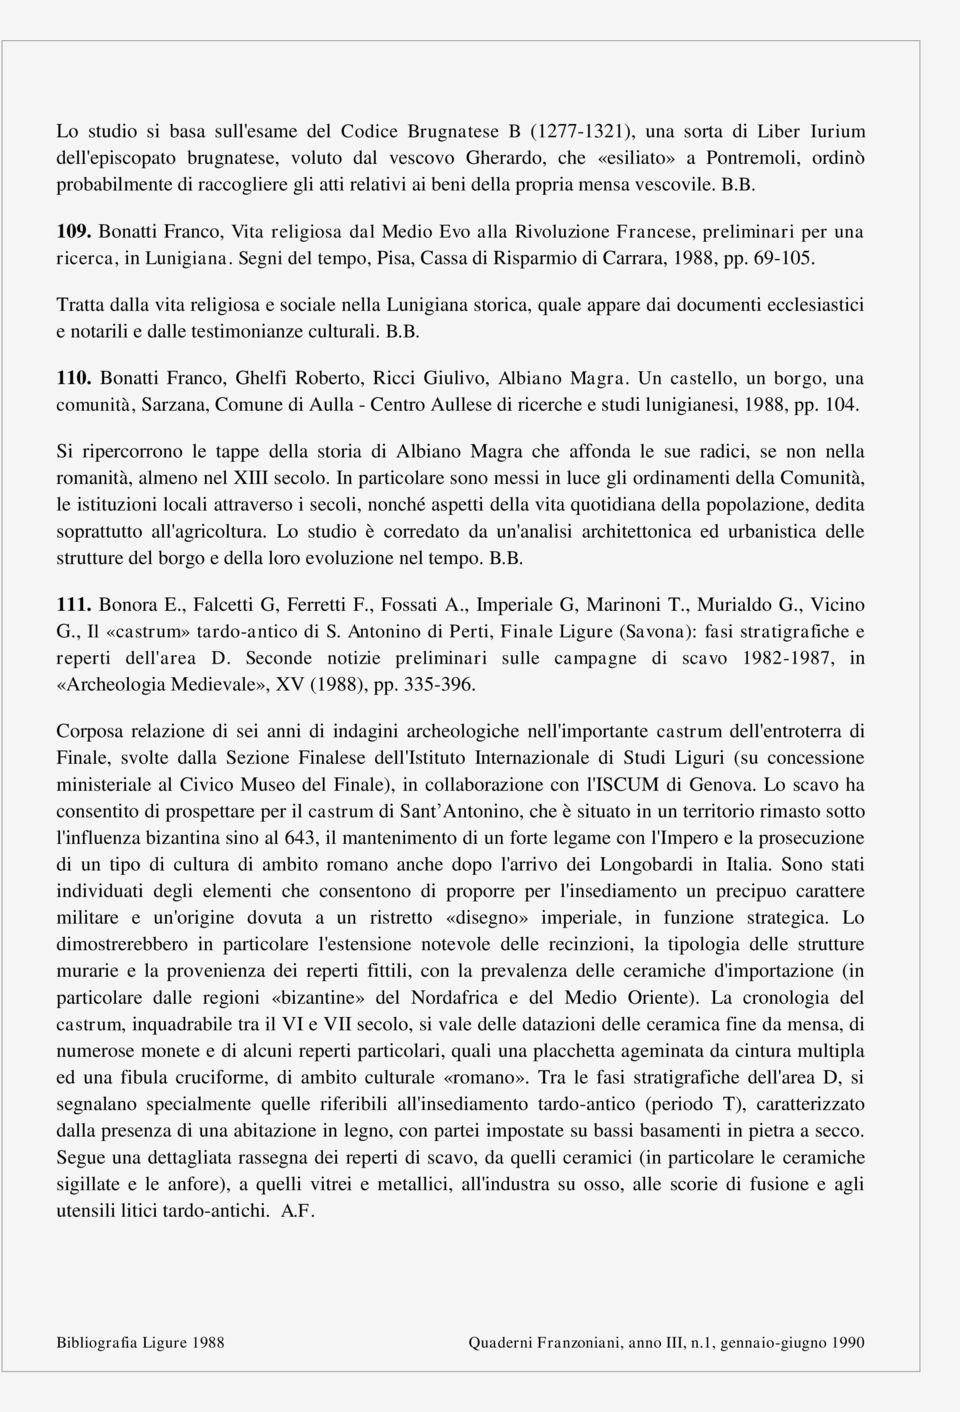 Segni del tempo, Pisa, Cassa di Risparmio di Carrara, 1988, pp. 69-105.